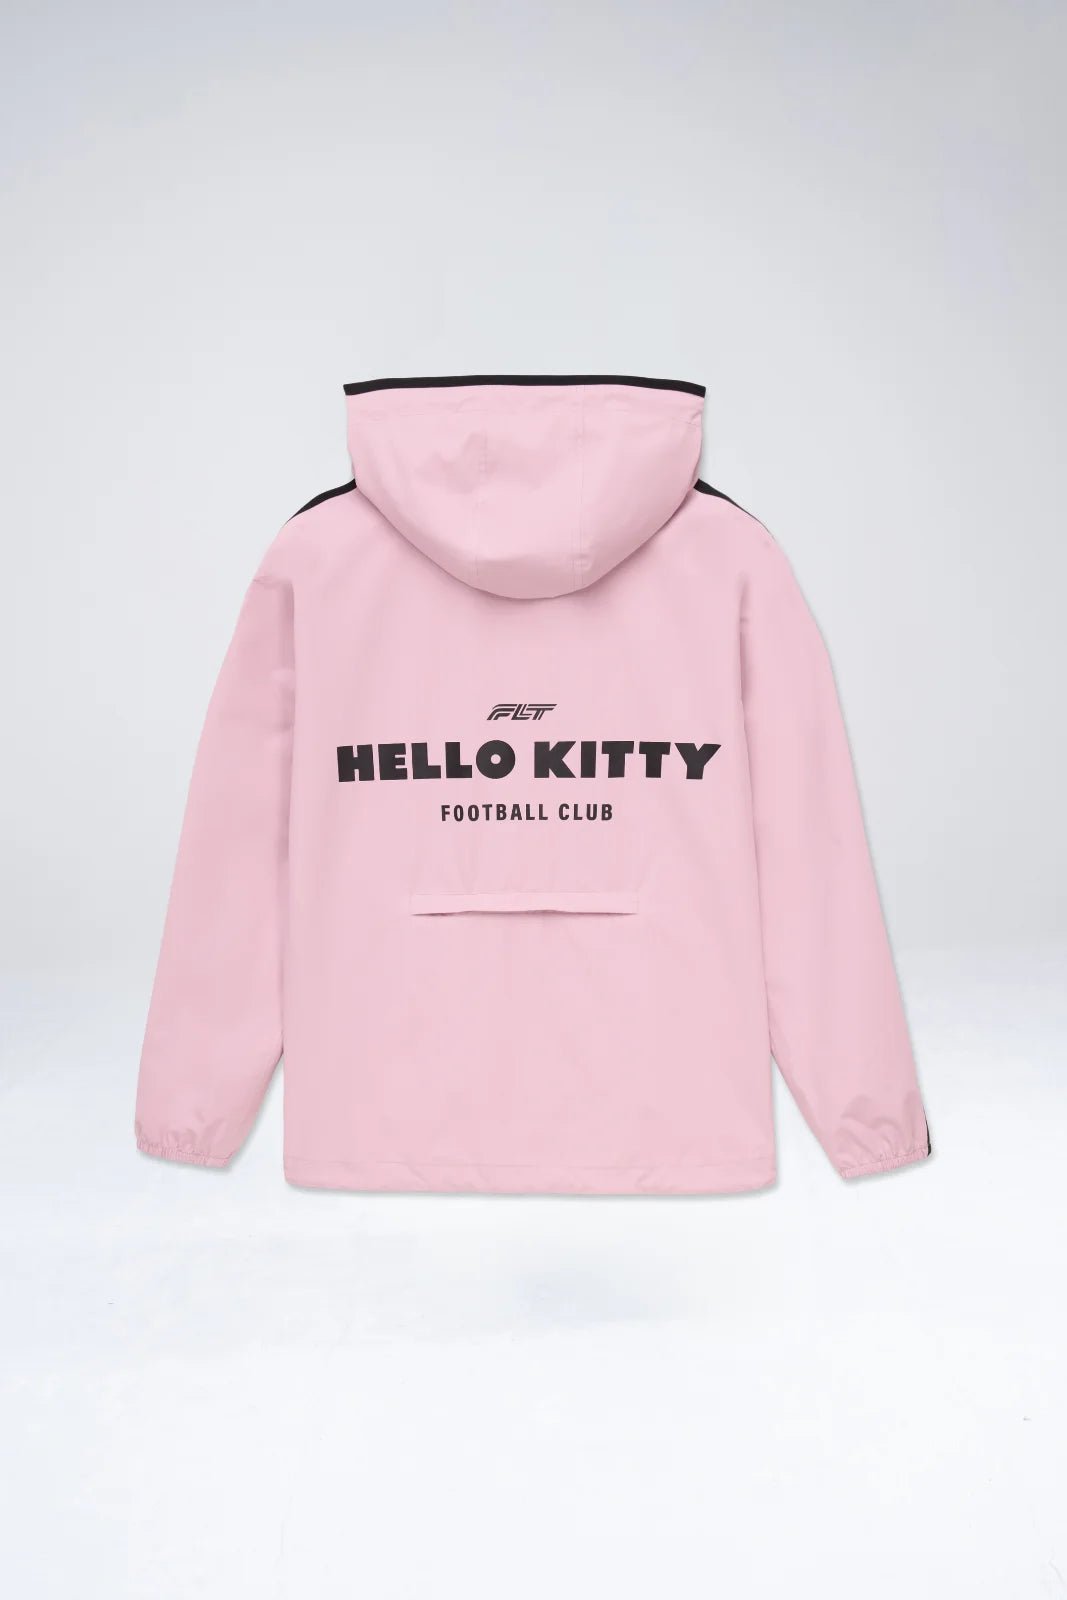 Passy - Imperméable Court Veste Coupe-vent - Flotte x Hello Kitty #couleur_bonbon